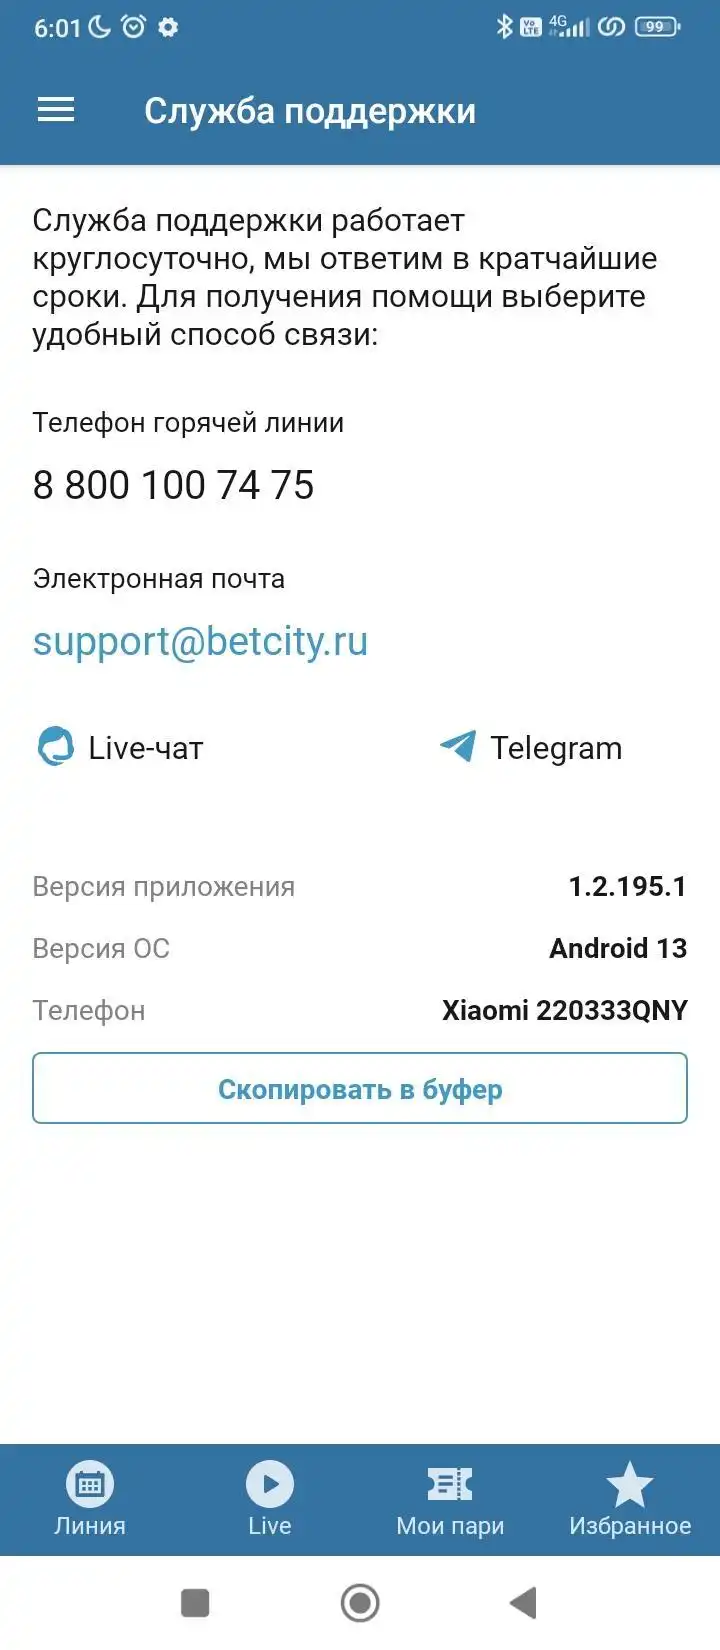 Служба поддержки в мобильном приложении Бетсити на андроид